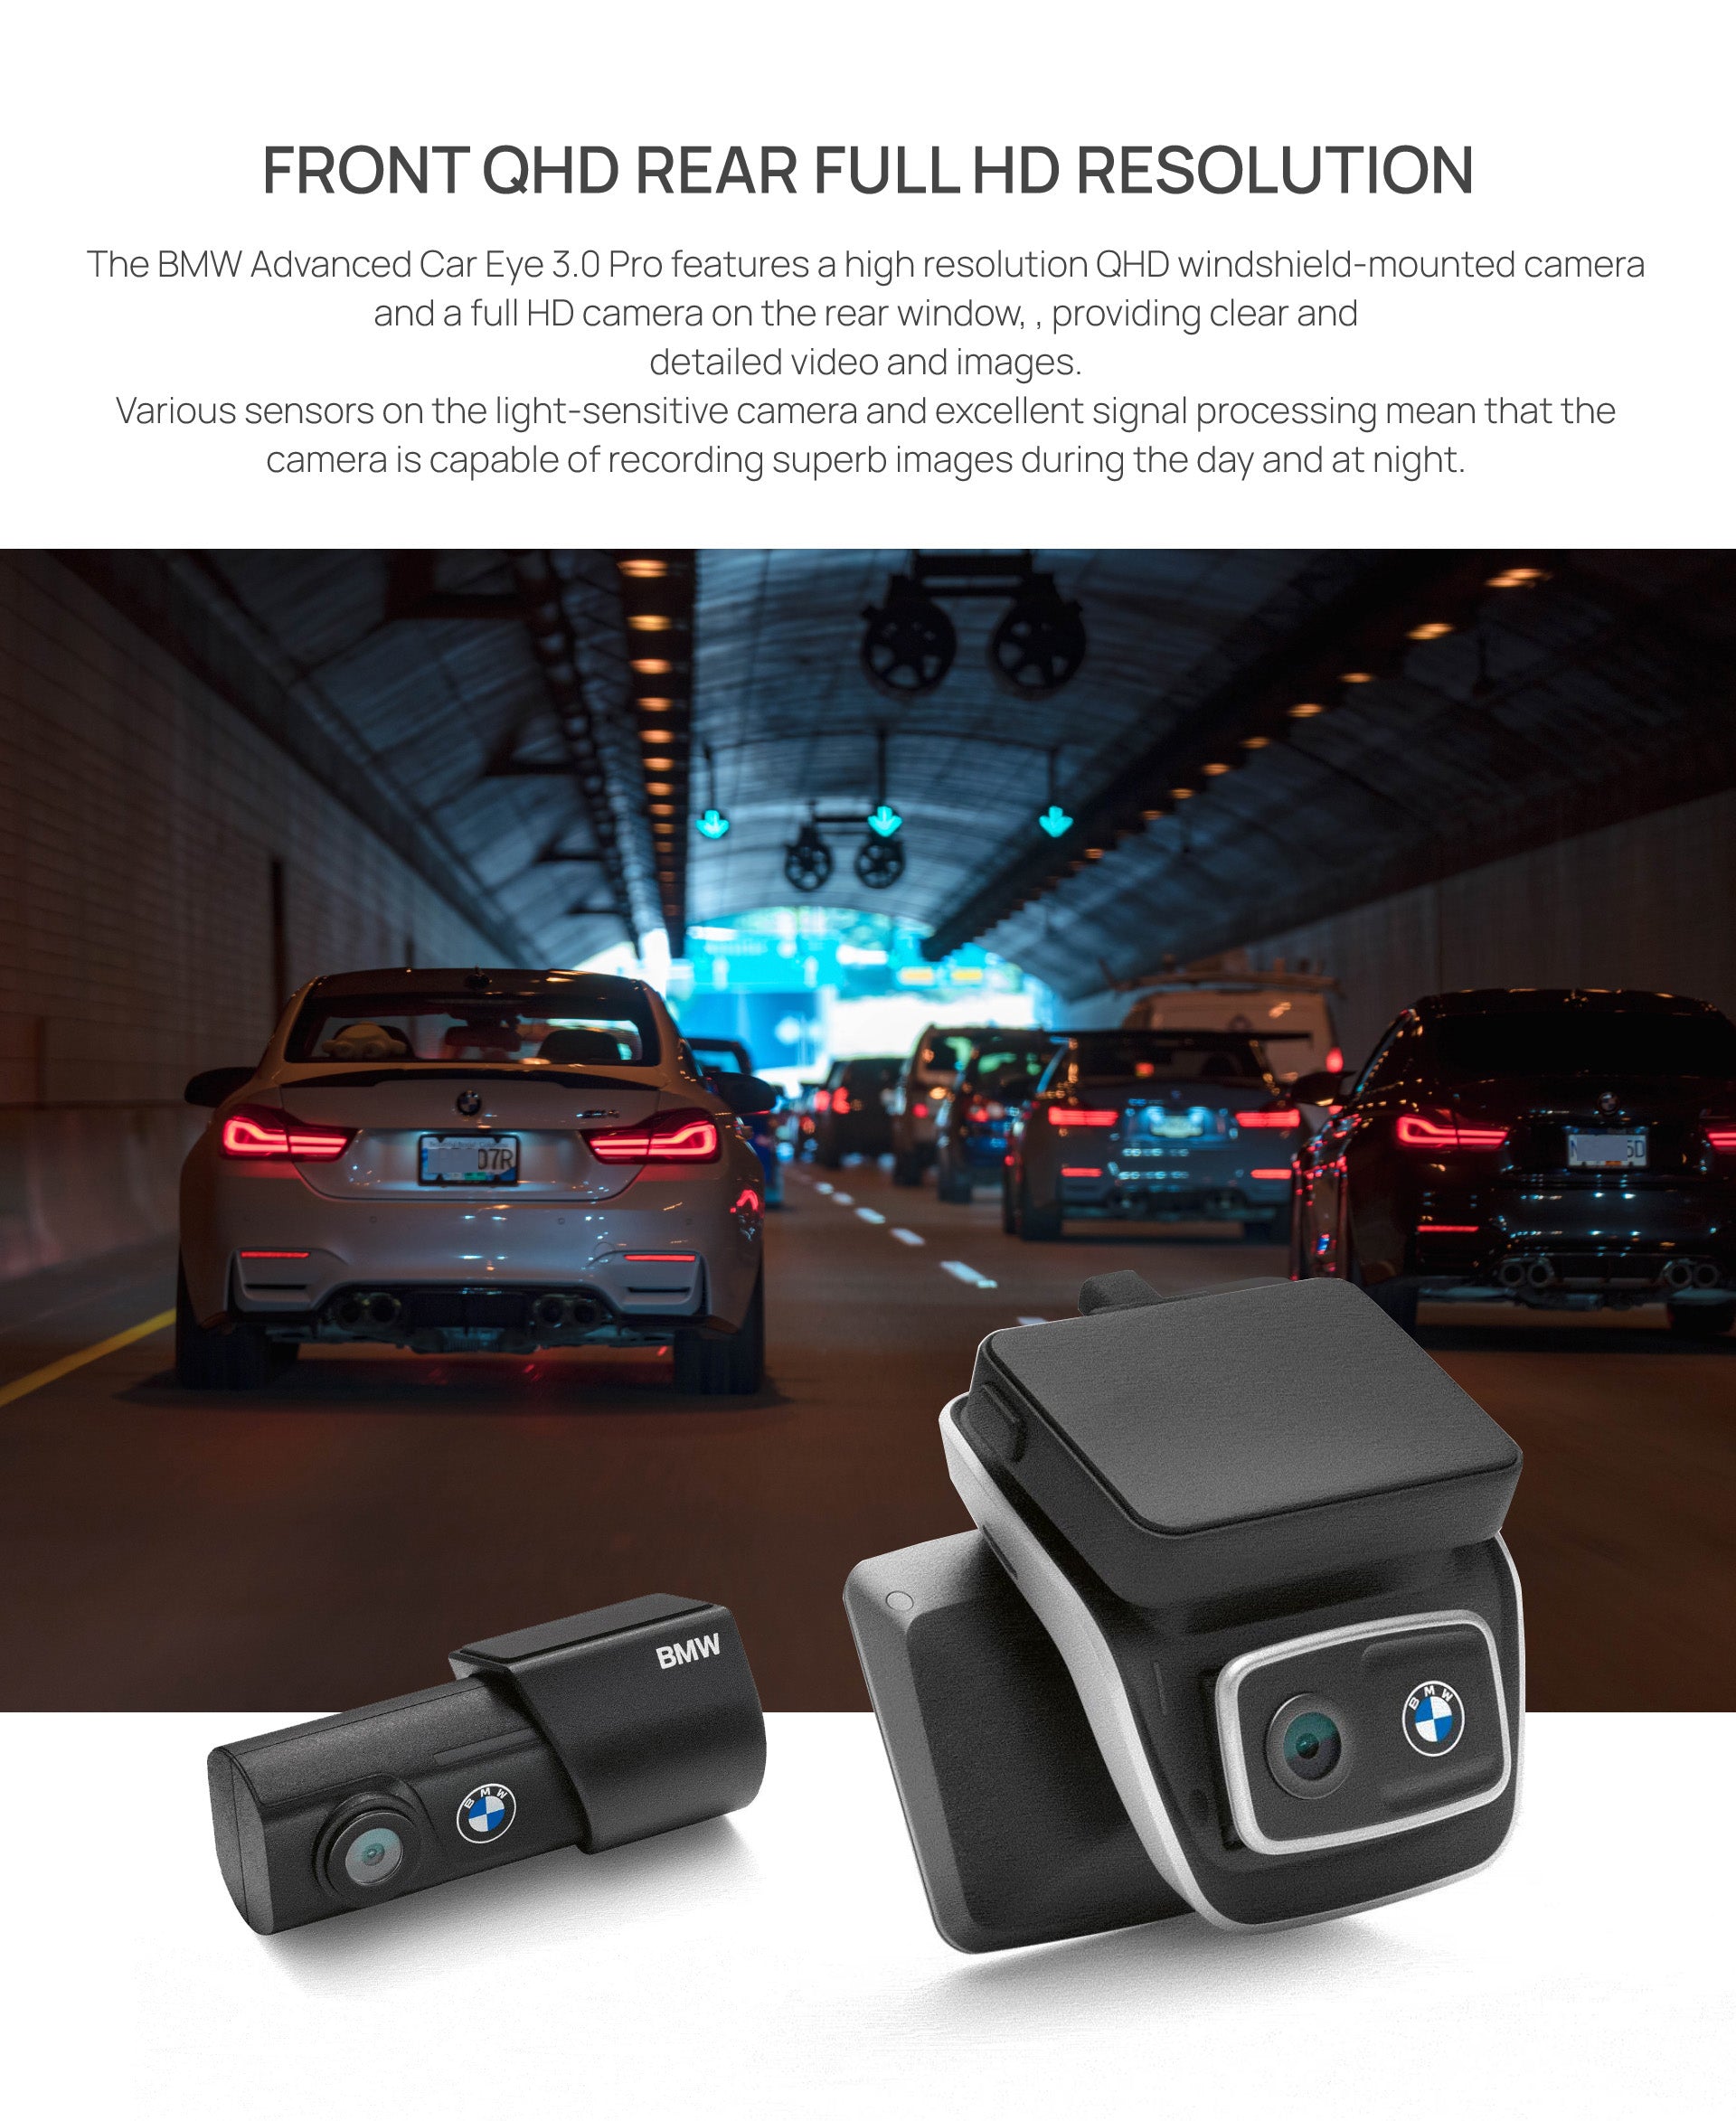 Advanced Car Eye 3.0 PRO. Safety in Full HD